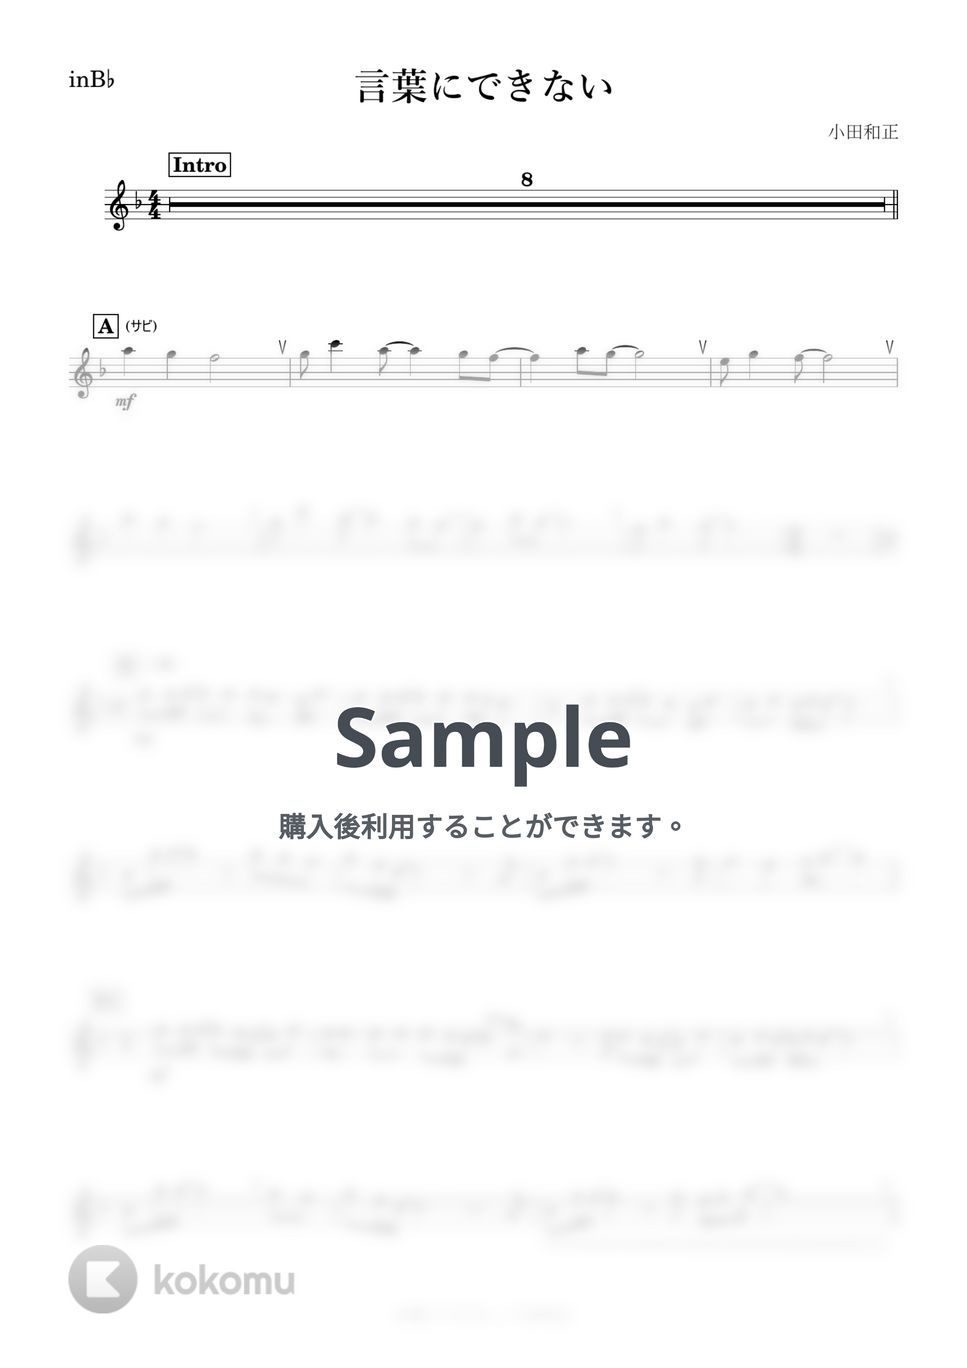 小田和正 - 言葉にできない (B♭) by kanamusic